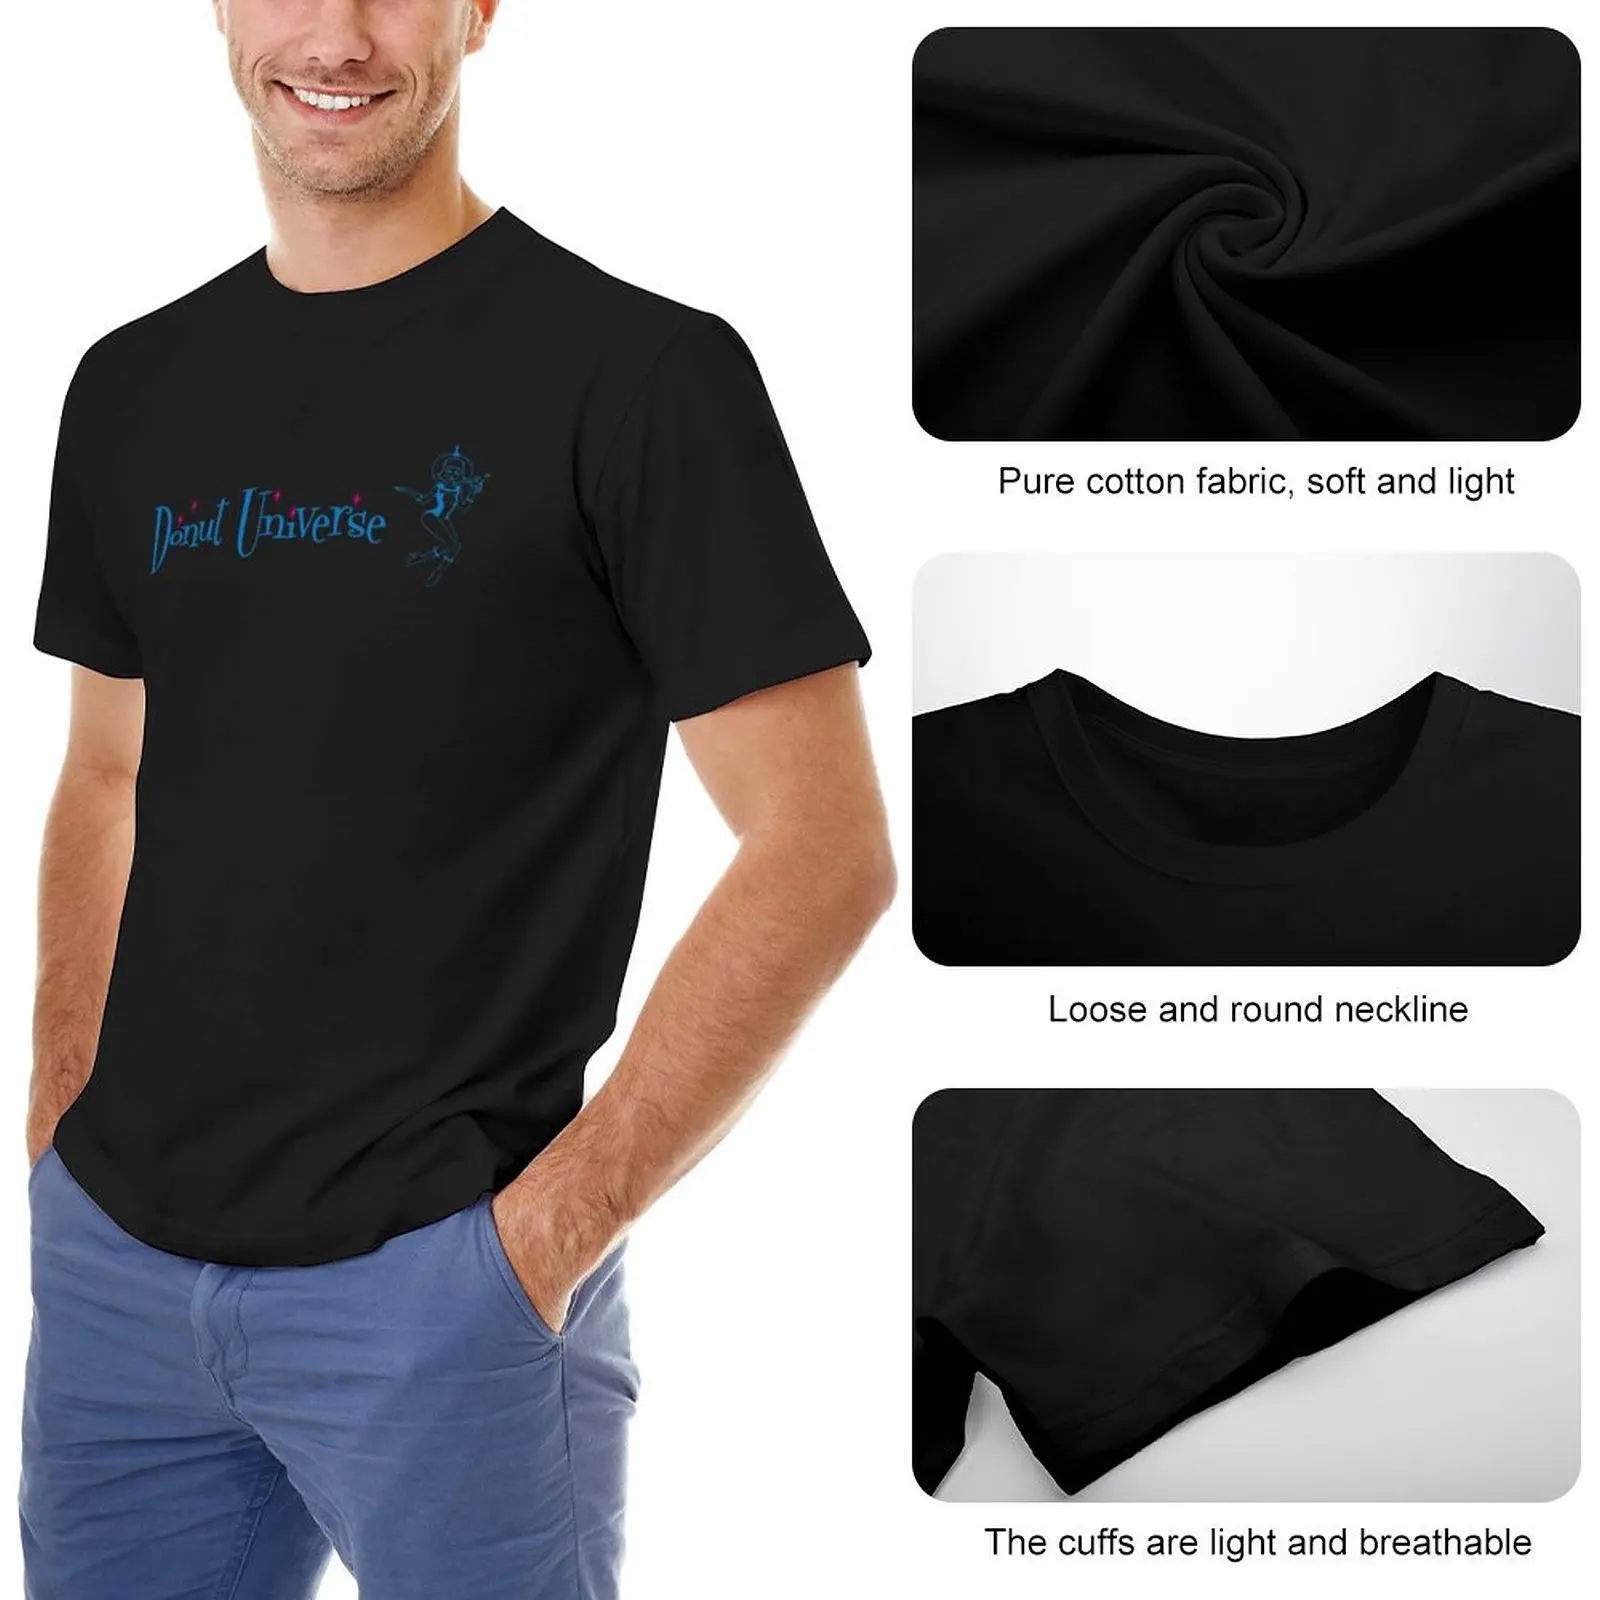 Вселенная пончиков - Горизонтальный логотип - Одежда, футболки, спортивные рубашки, забавные футболки, футболки для тяжеловесов, простые черные футболки для мужчин Изображение 1